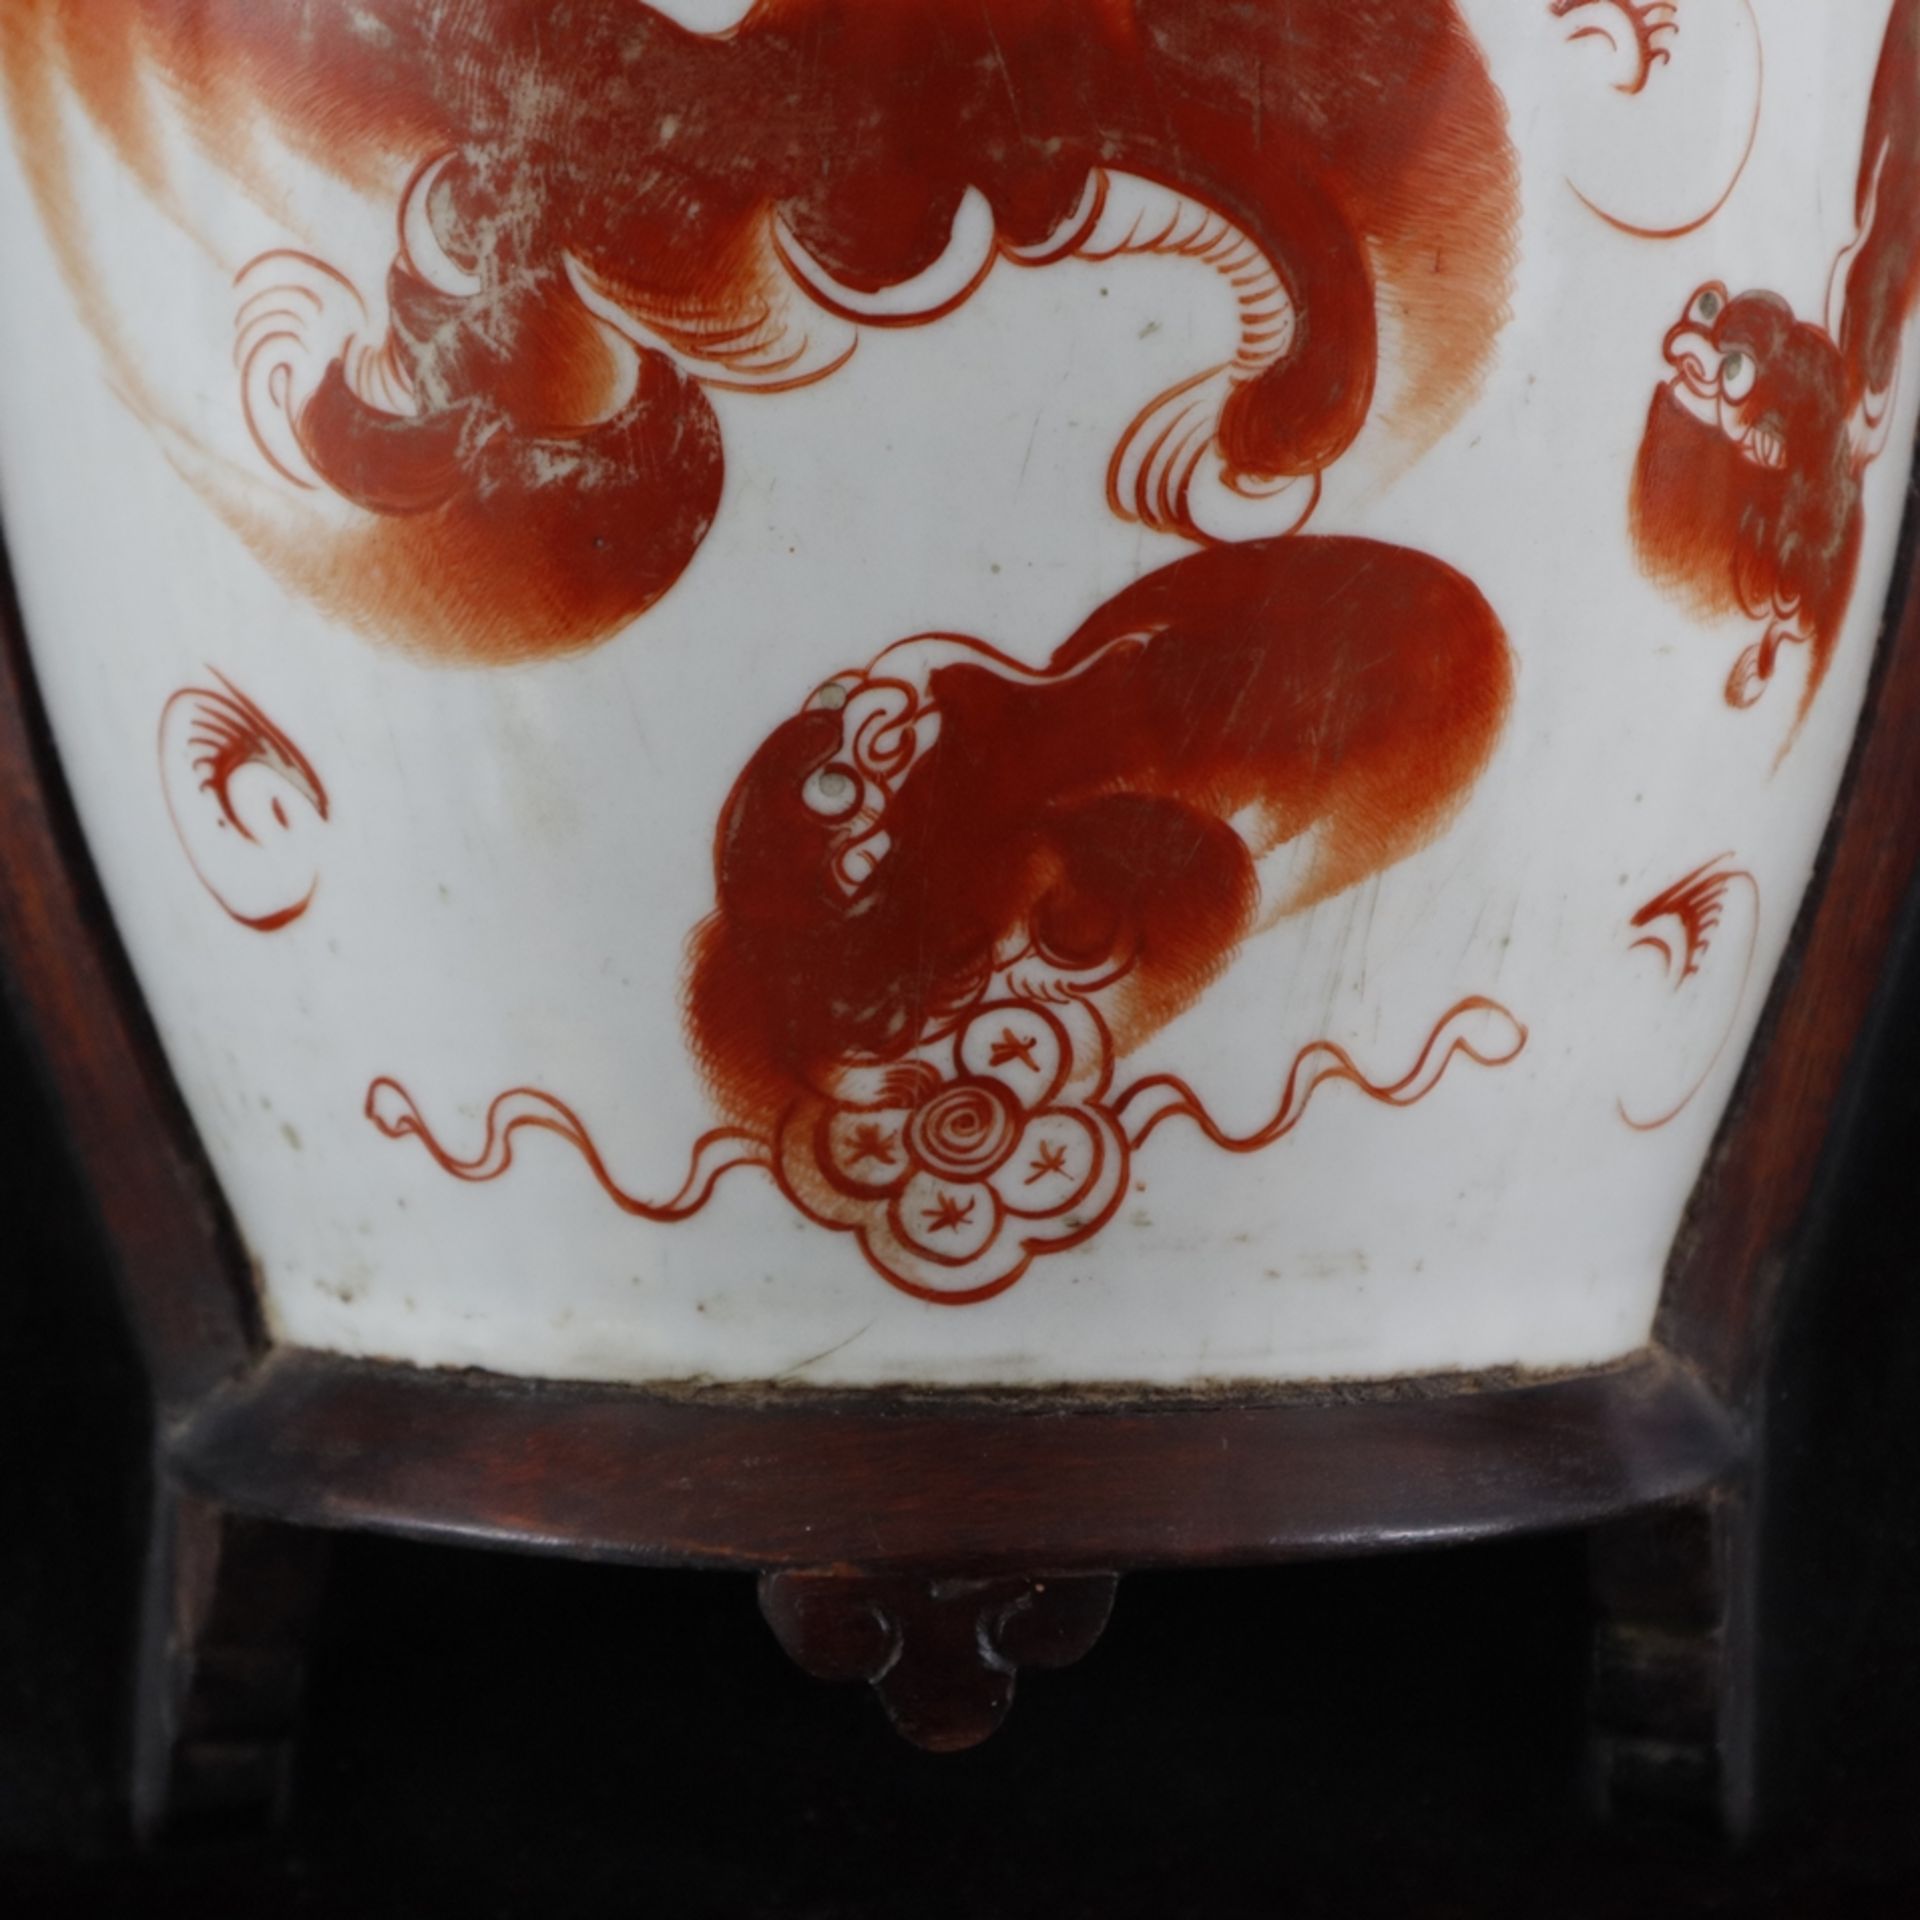 Wanddekoration mit Vase - China, halbe Porzellanvase in Holzrahmung eingelassen, Vase bemalt mit Sh - Bild 4 aus 6